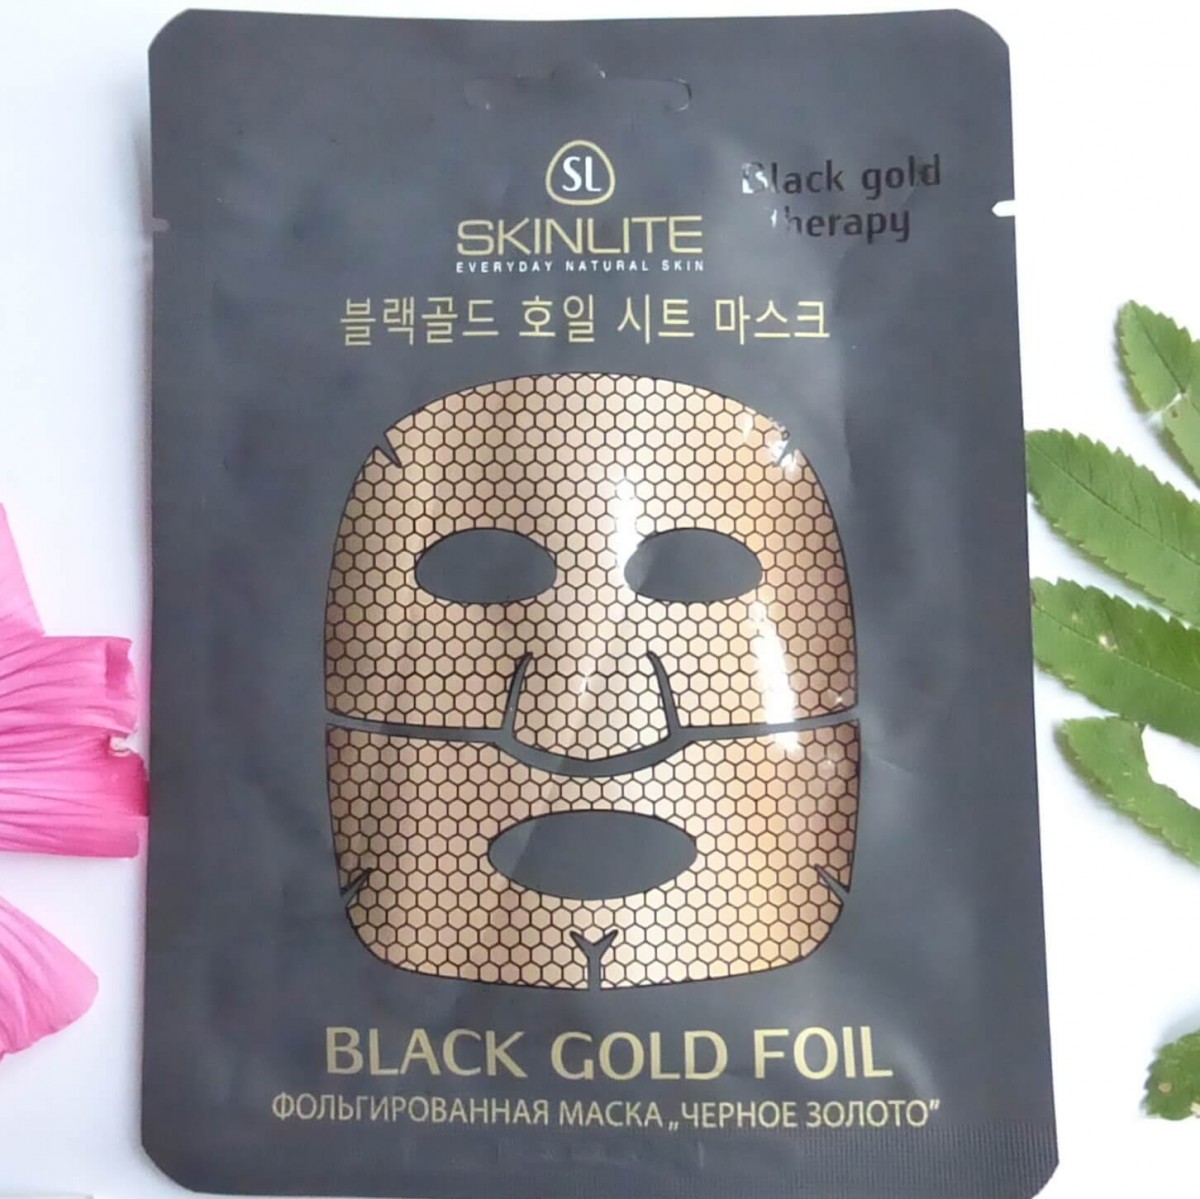 Black Gold Foil Mask [Skinlite]